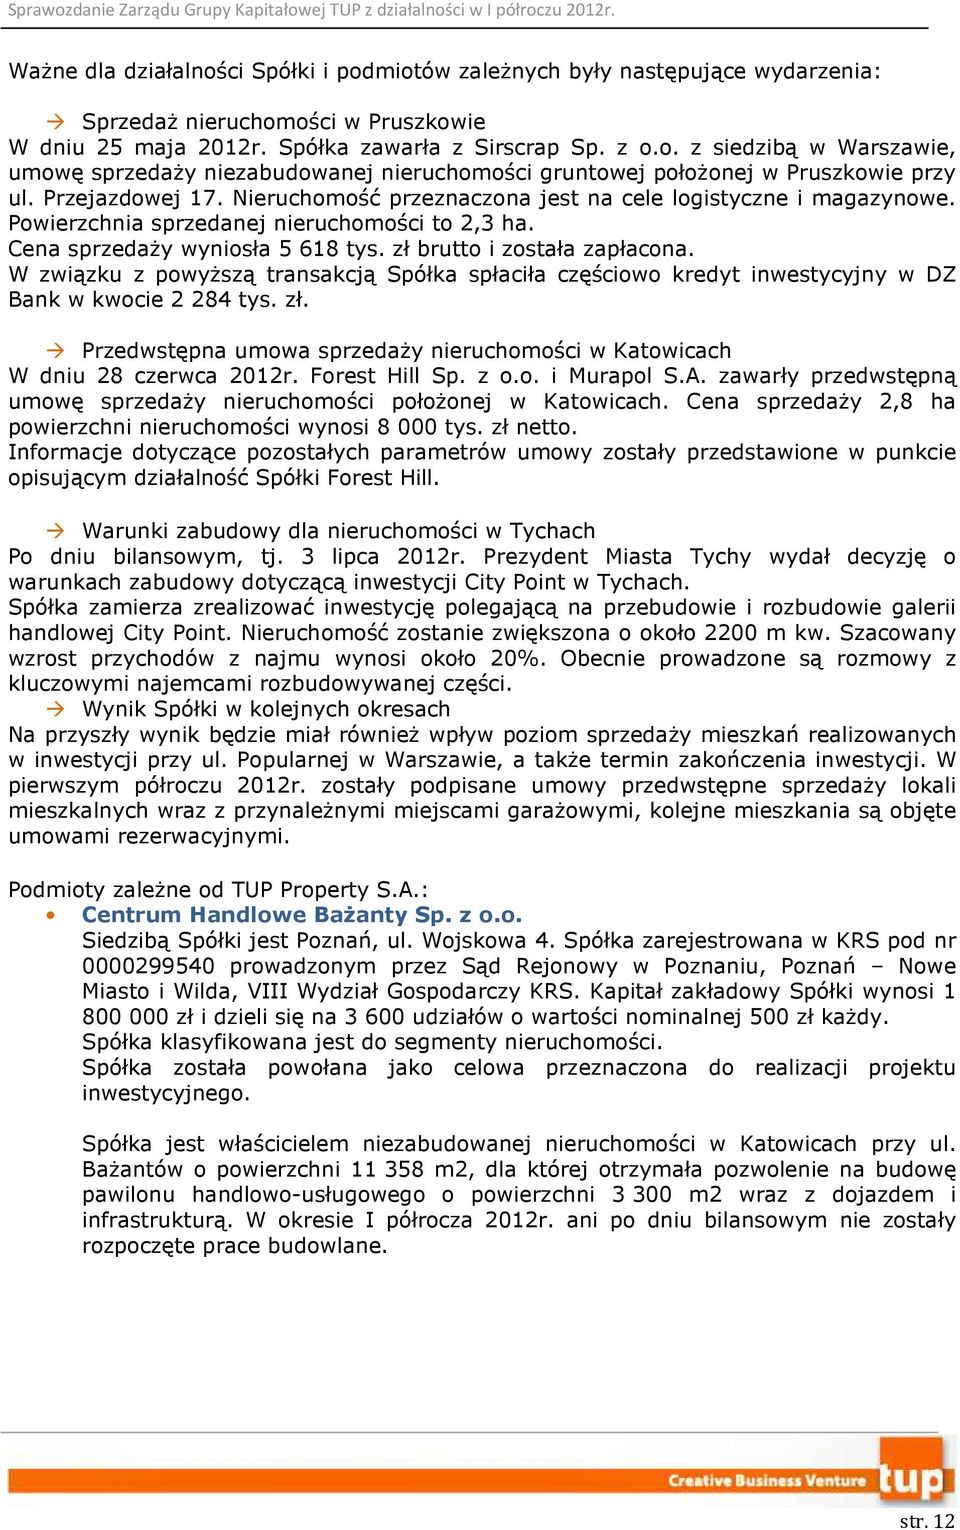 W związku z powyższą transakcją Spółka spłaciła częściowo kredyt inwestycyjny w DZ Bank w kwocie 2 284 tys. zł. Przedwstępna umowa sprzedaży nieruchomości w Katowicach W dniu 28 czerwca 2012r.